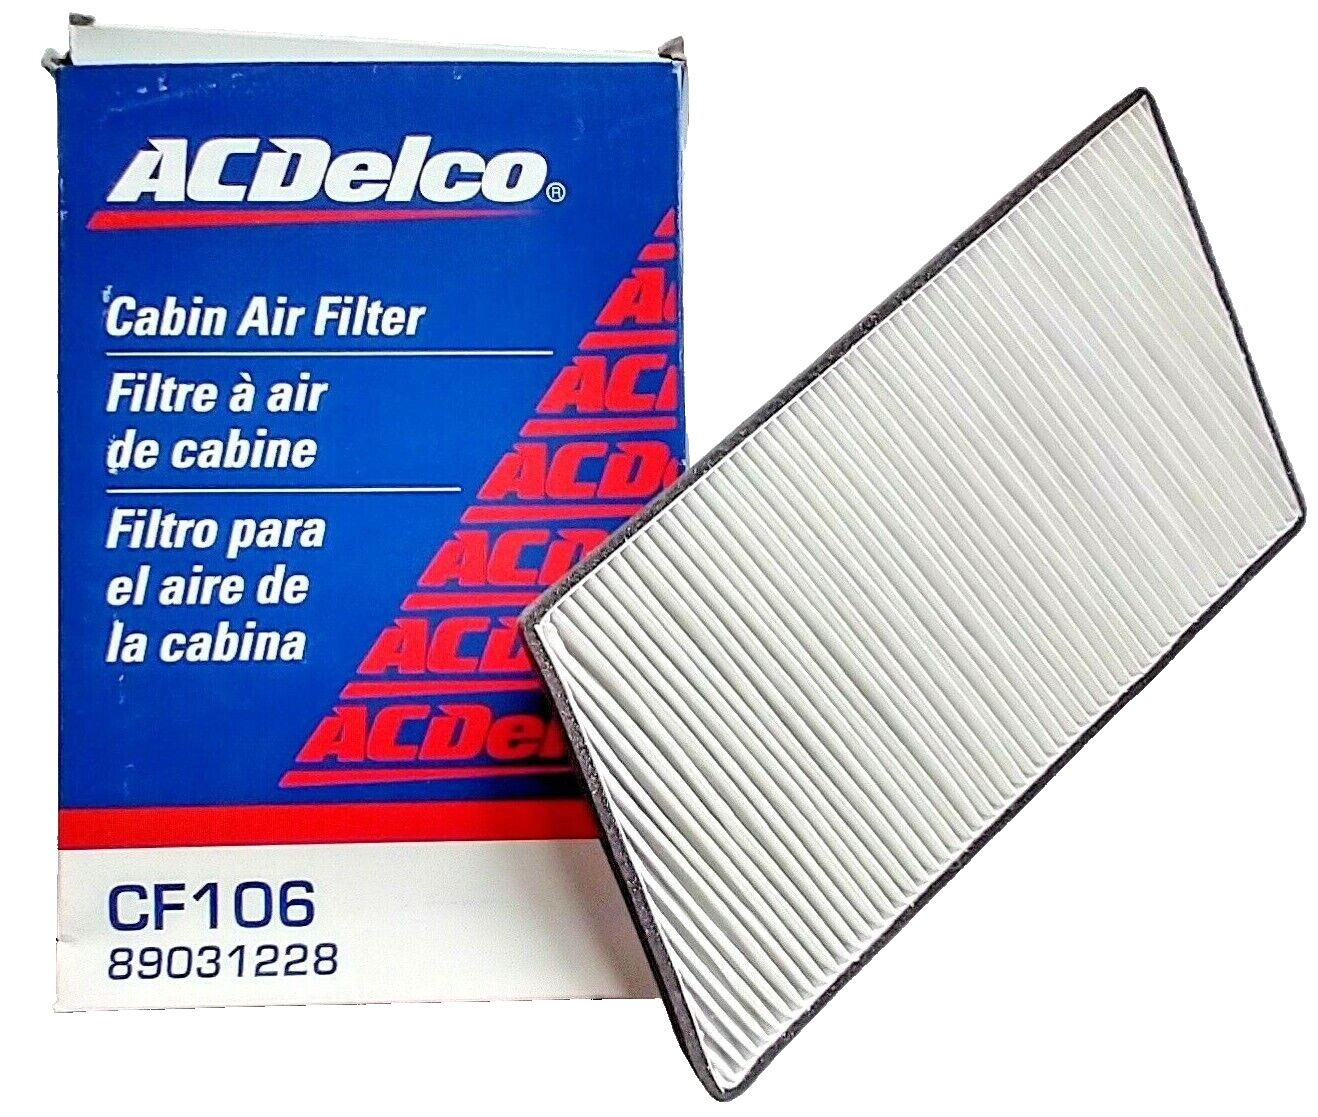 Cabin Air Filter ACDELCO CF106